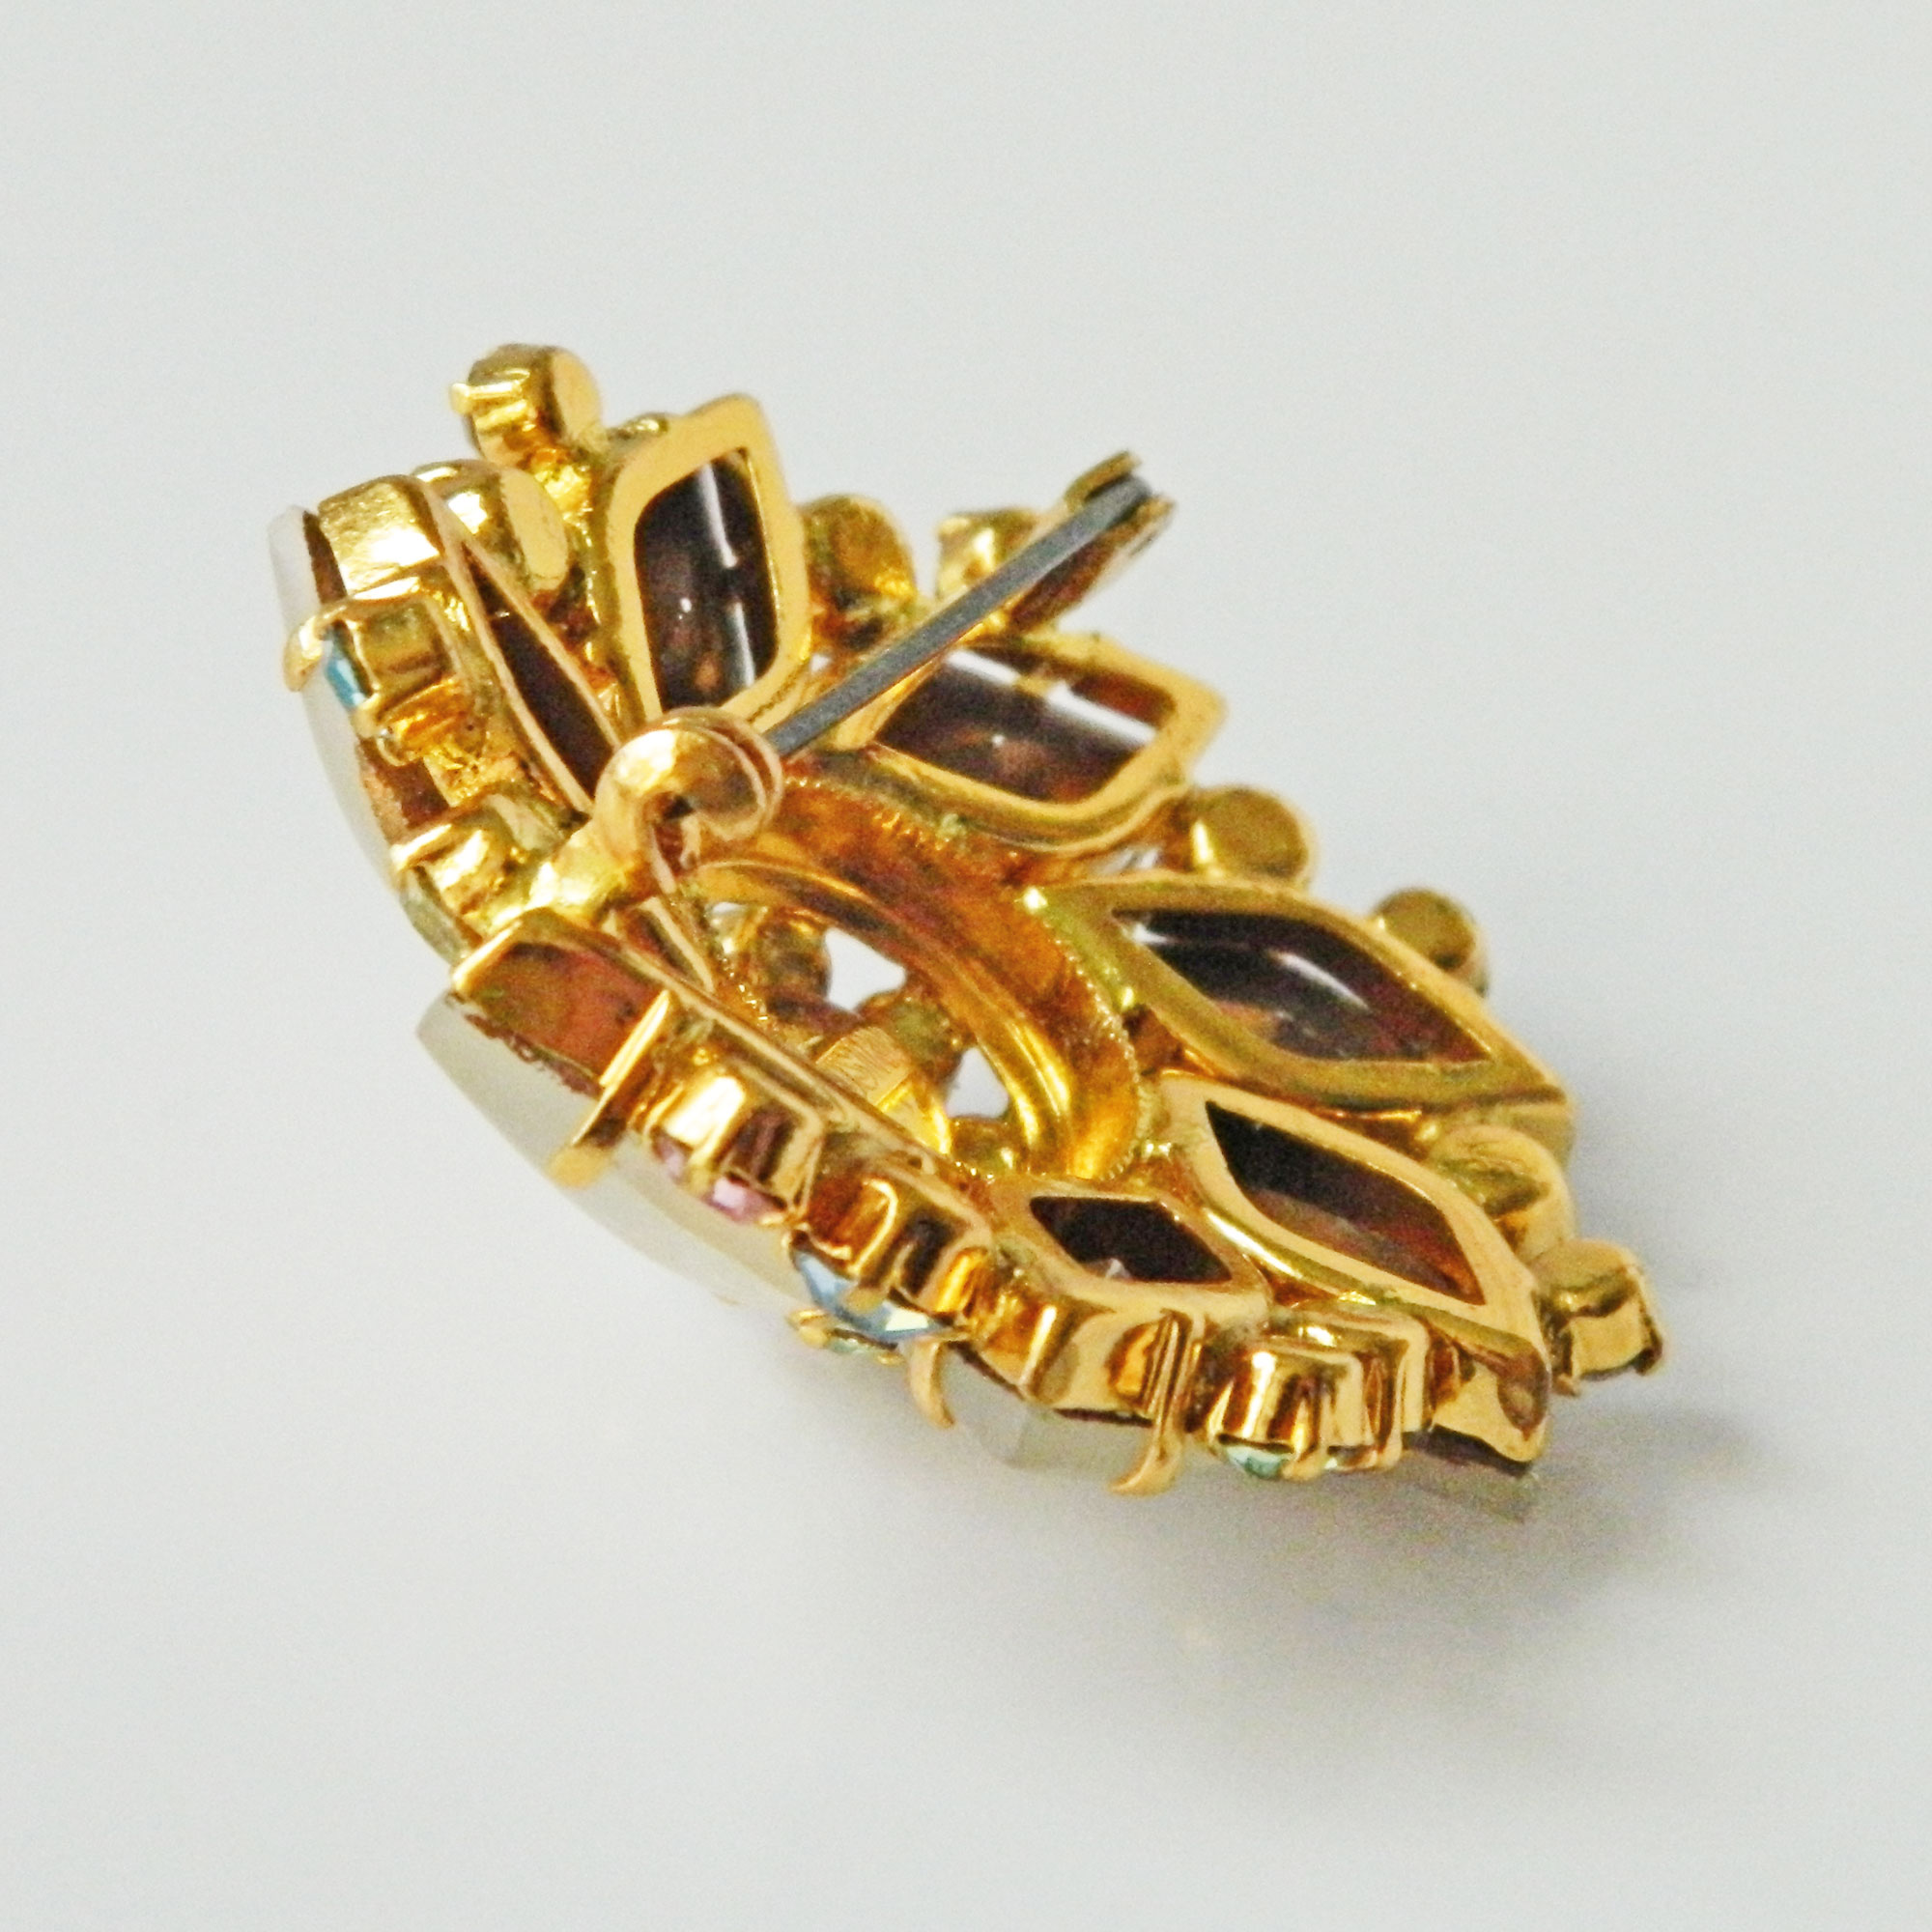 1950s Austrian crystal rhinestone brooch